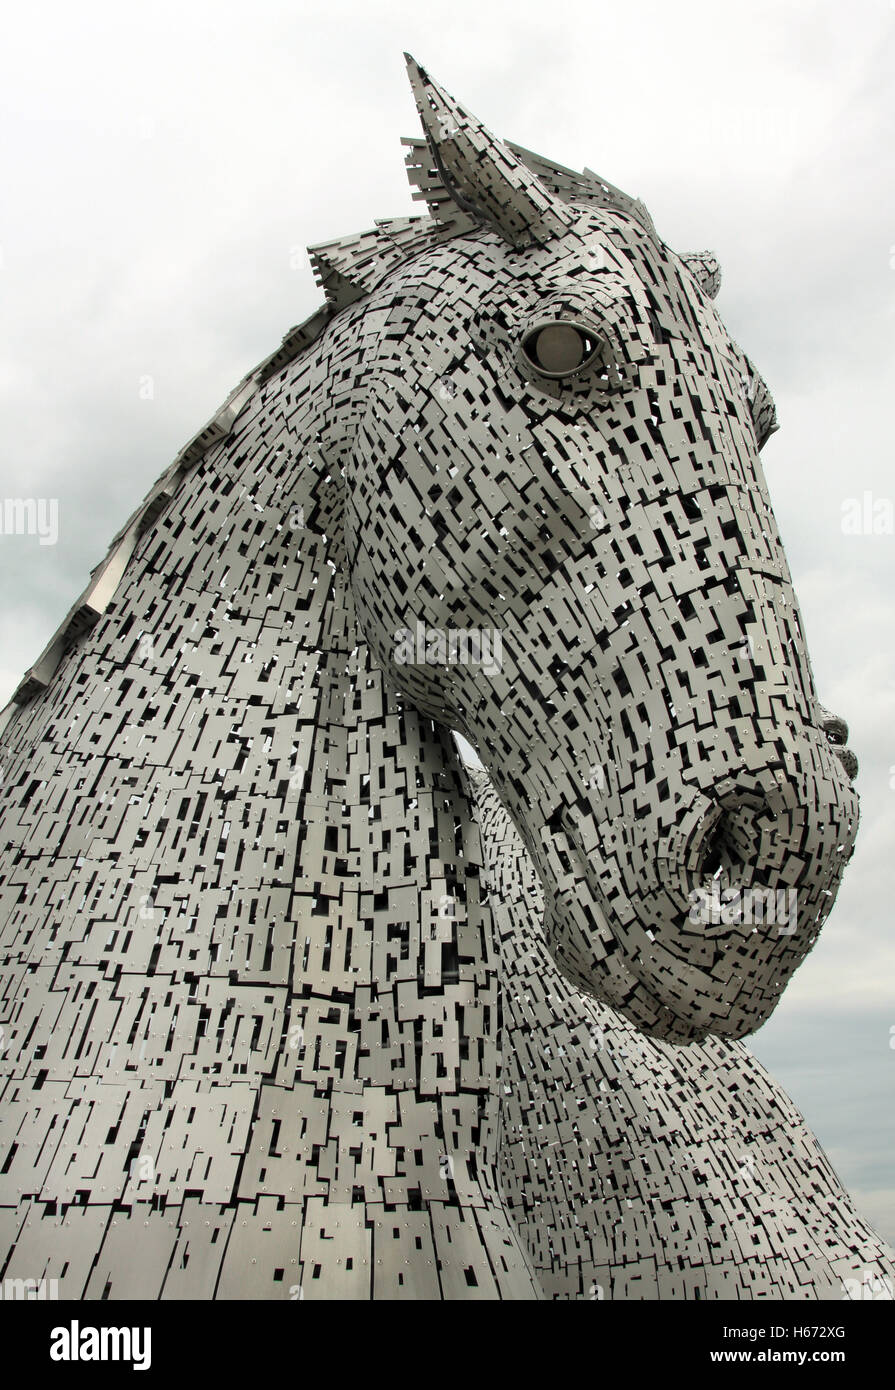 Détail d'un des chefs d'une des sculptures de Kelpie Falkirk, Ecosse. Ils sont l'oeuvre d'Andy Scott. Banque D'Images